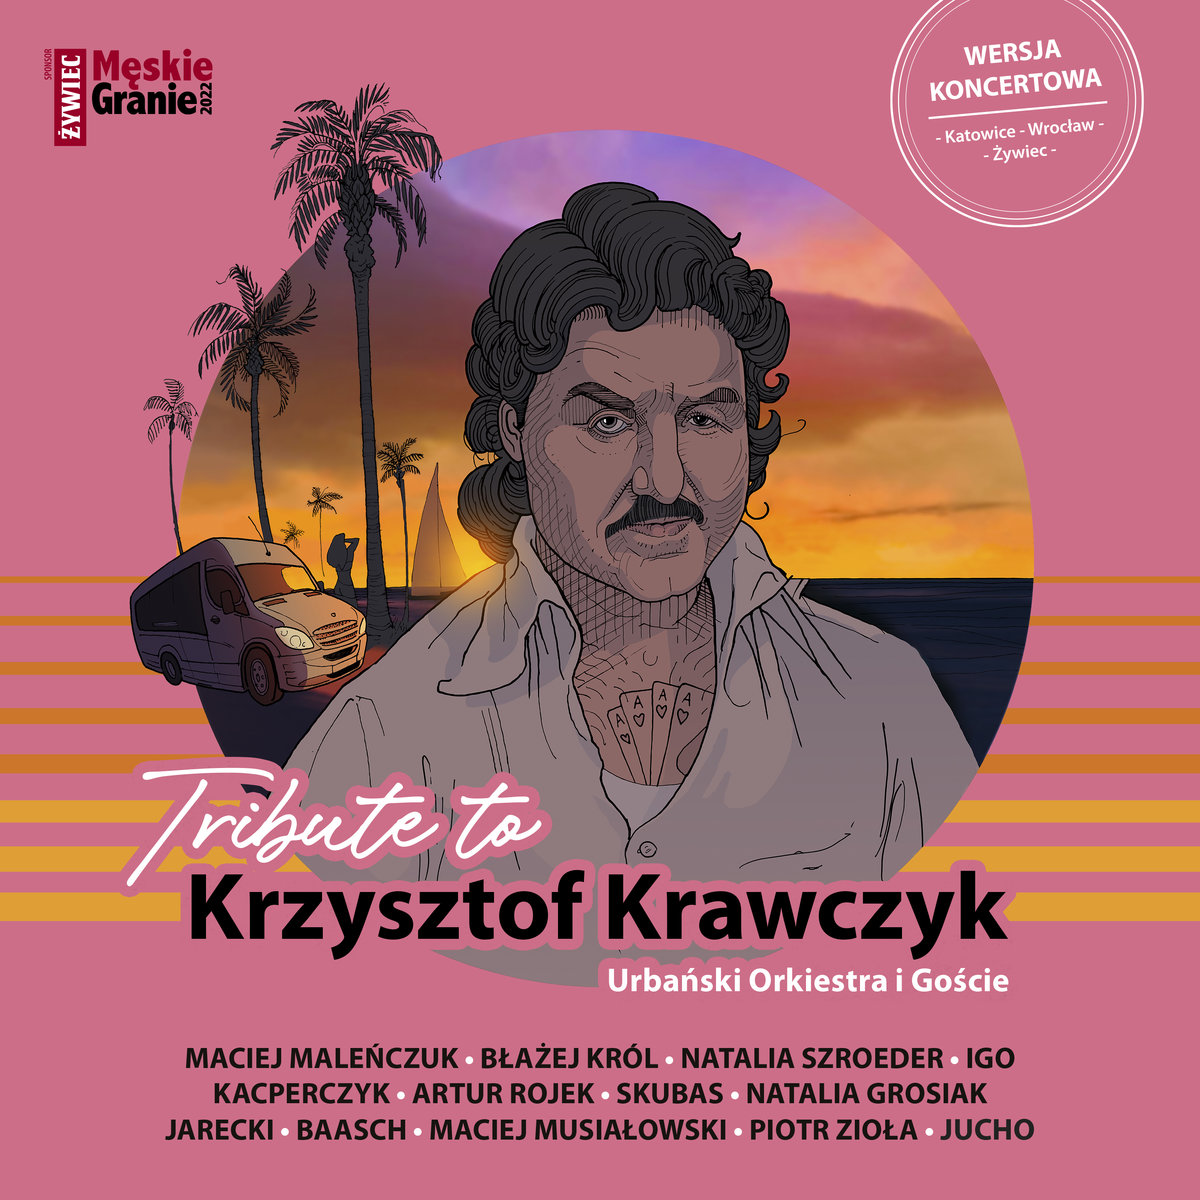 URBAŃSKI ORKIESTRA I GOŚCIE – Tribute To Krzysztof Krawczyk